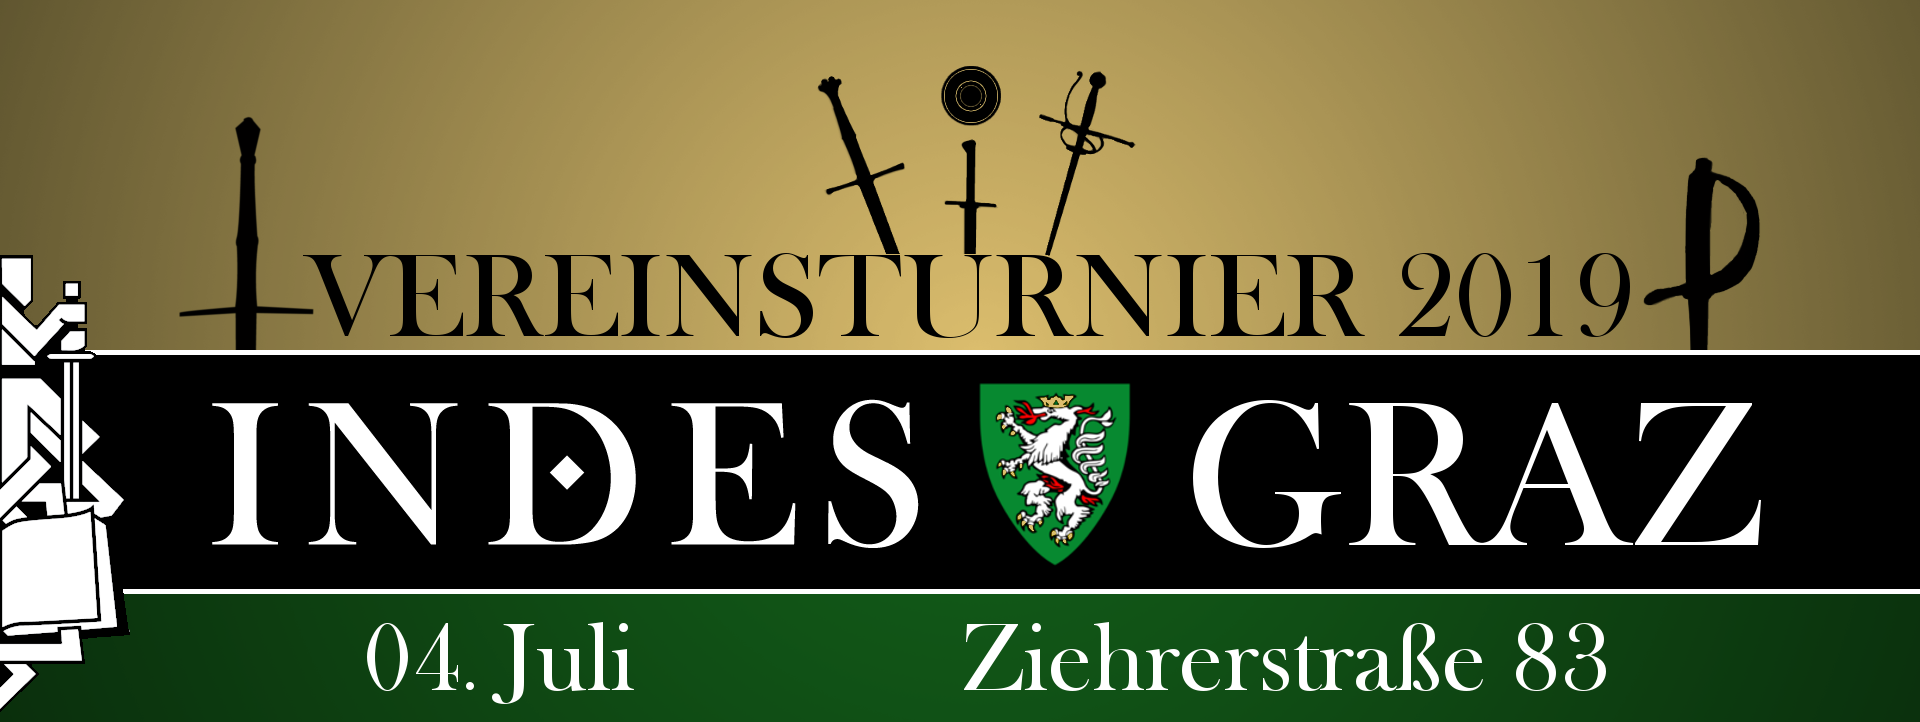 Grazer Vereinsturnier 2019 @ Sportzentrum Wiki | Graz | Steiermark | Österreich